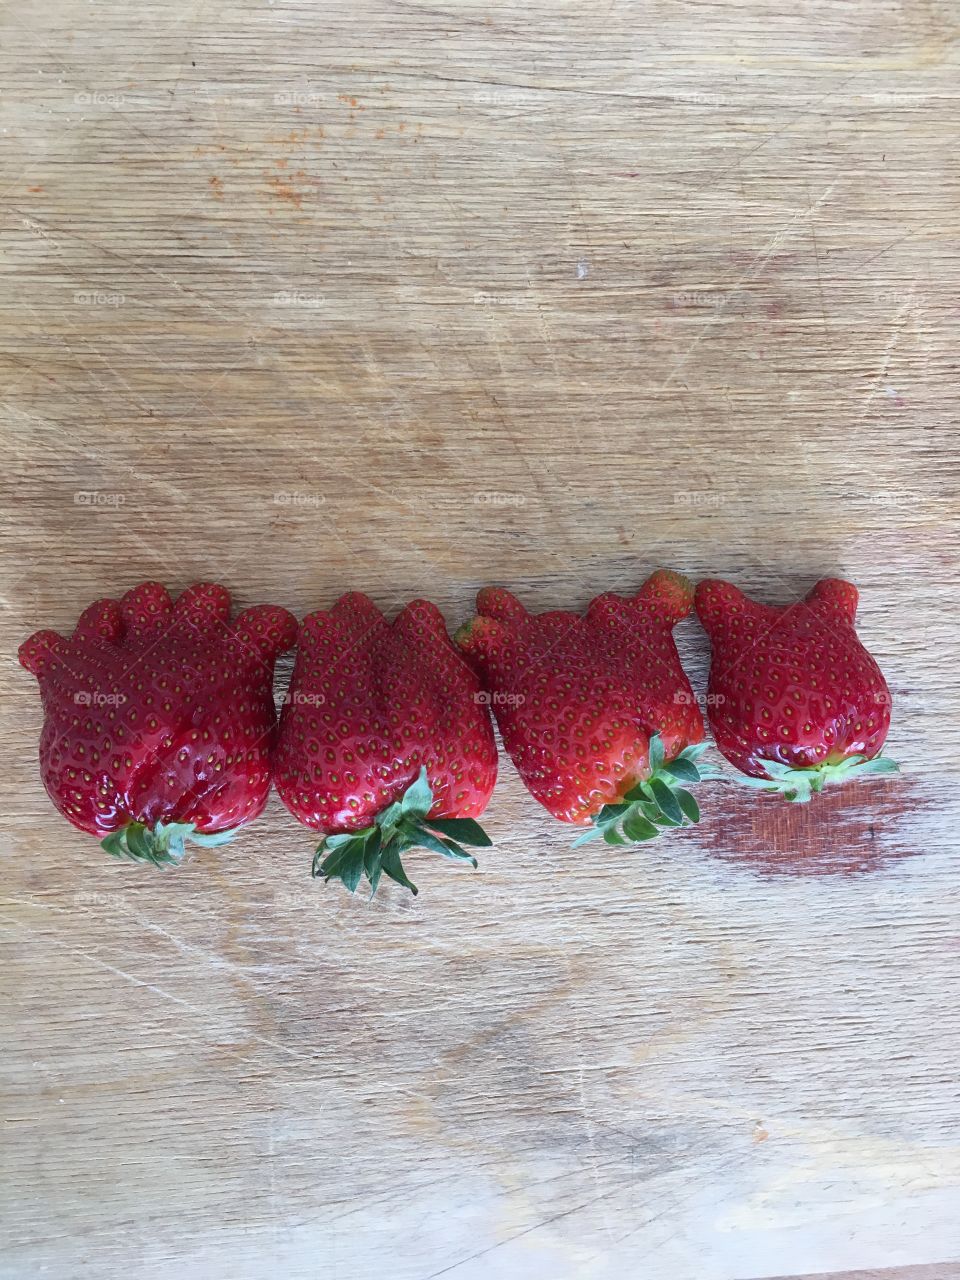 Beautiful strawberries 